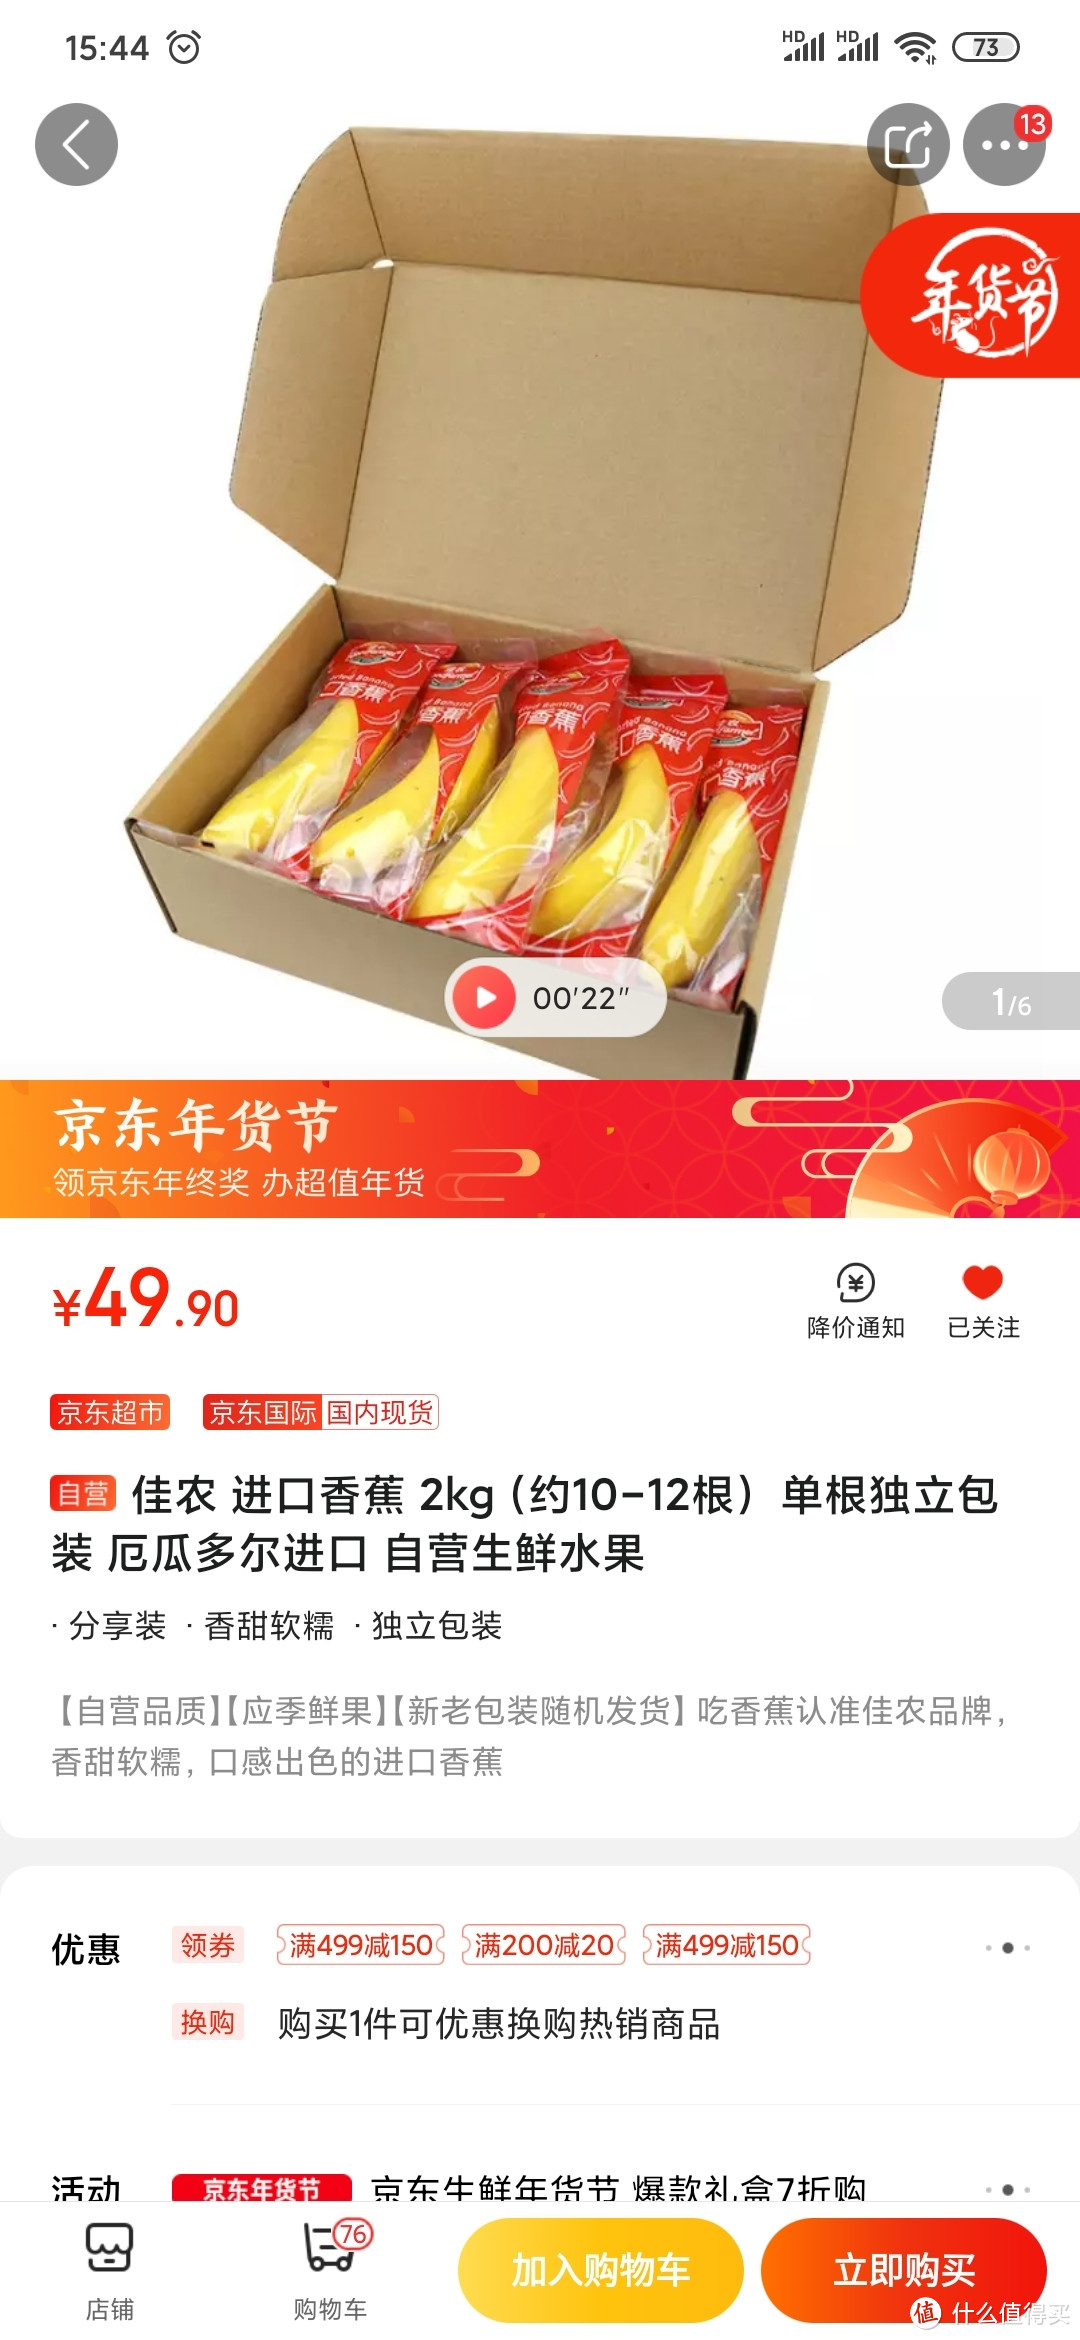 京东水果购买记:29块大洋的佳农菠萝香蕉香不？